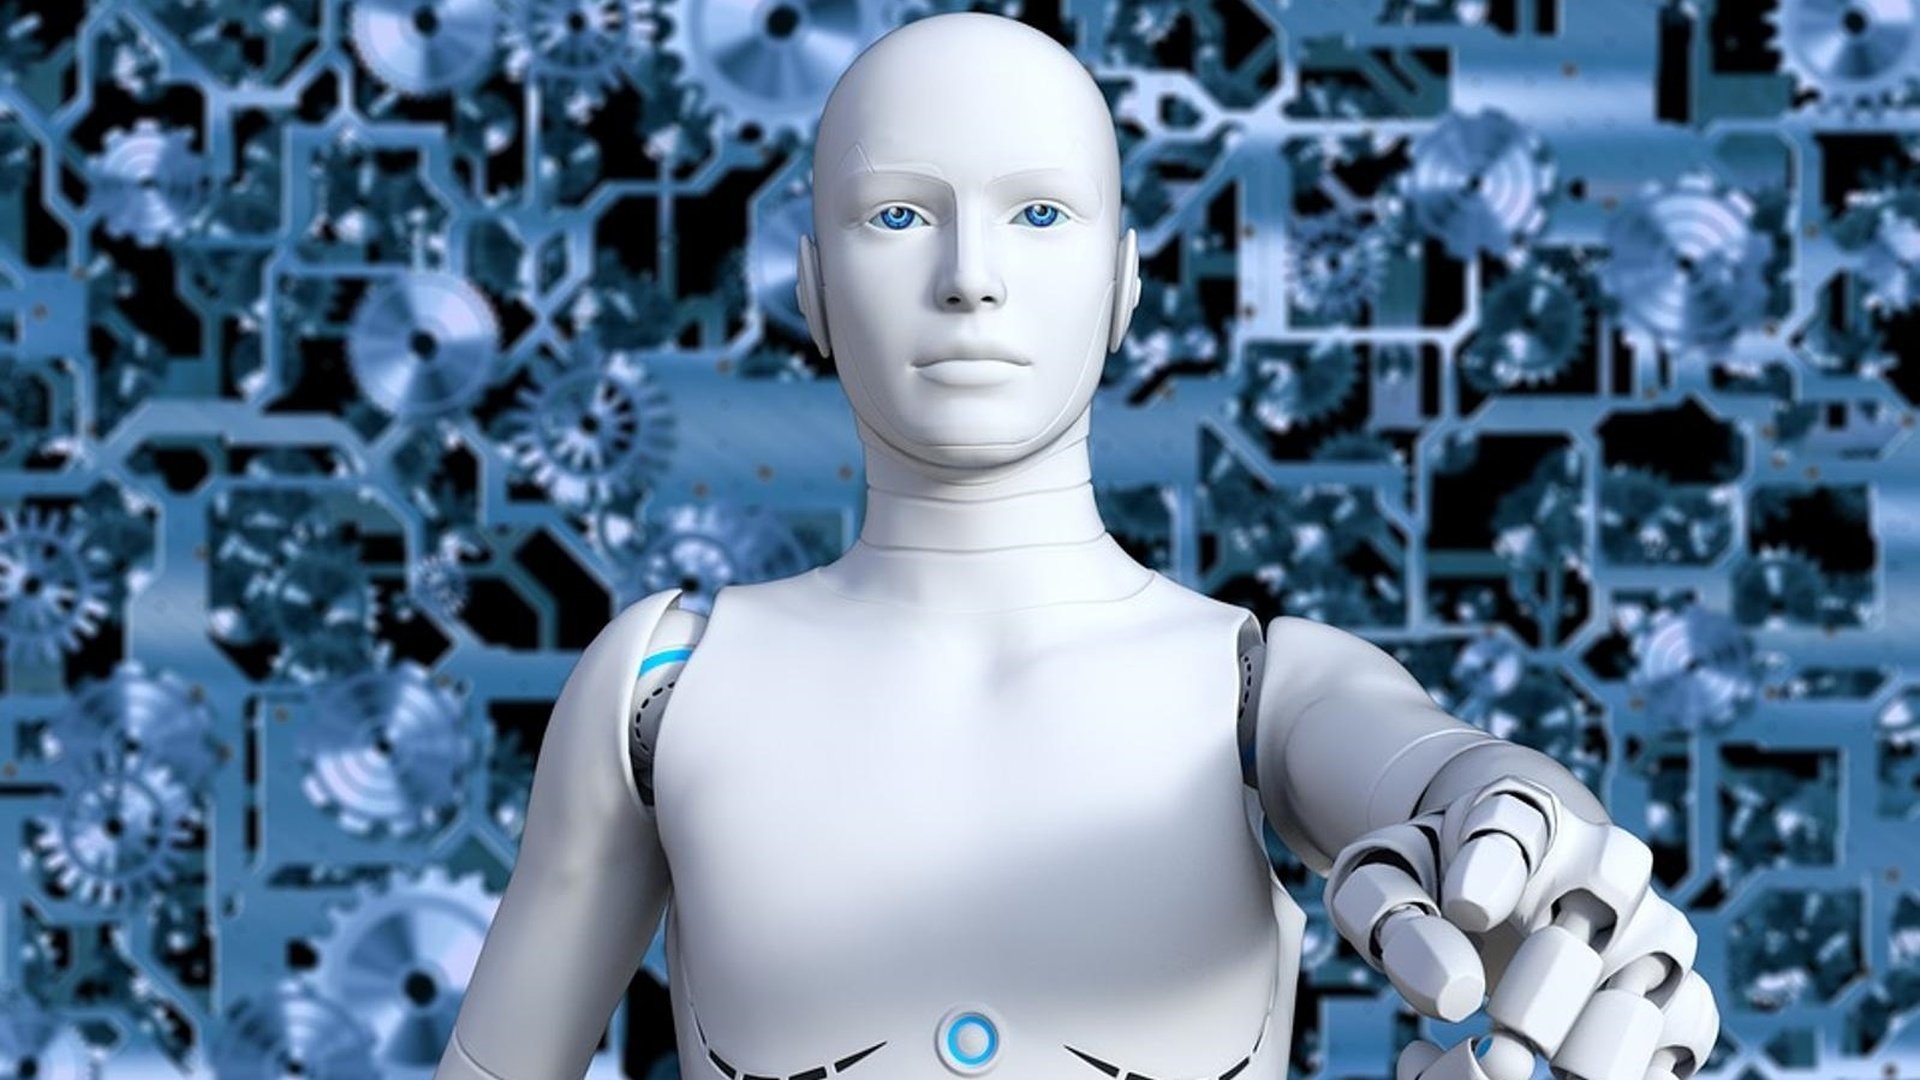 Роботов есть мозги. Айзек Азимов искусственный интеллект. Робот с искусственным интеллектом. Робот человек. Роботы заменят людей.